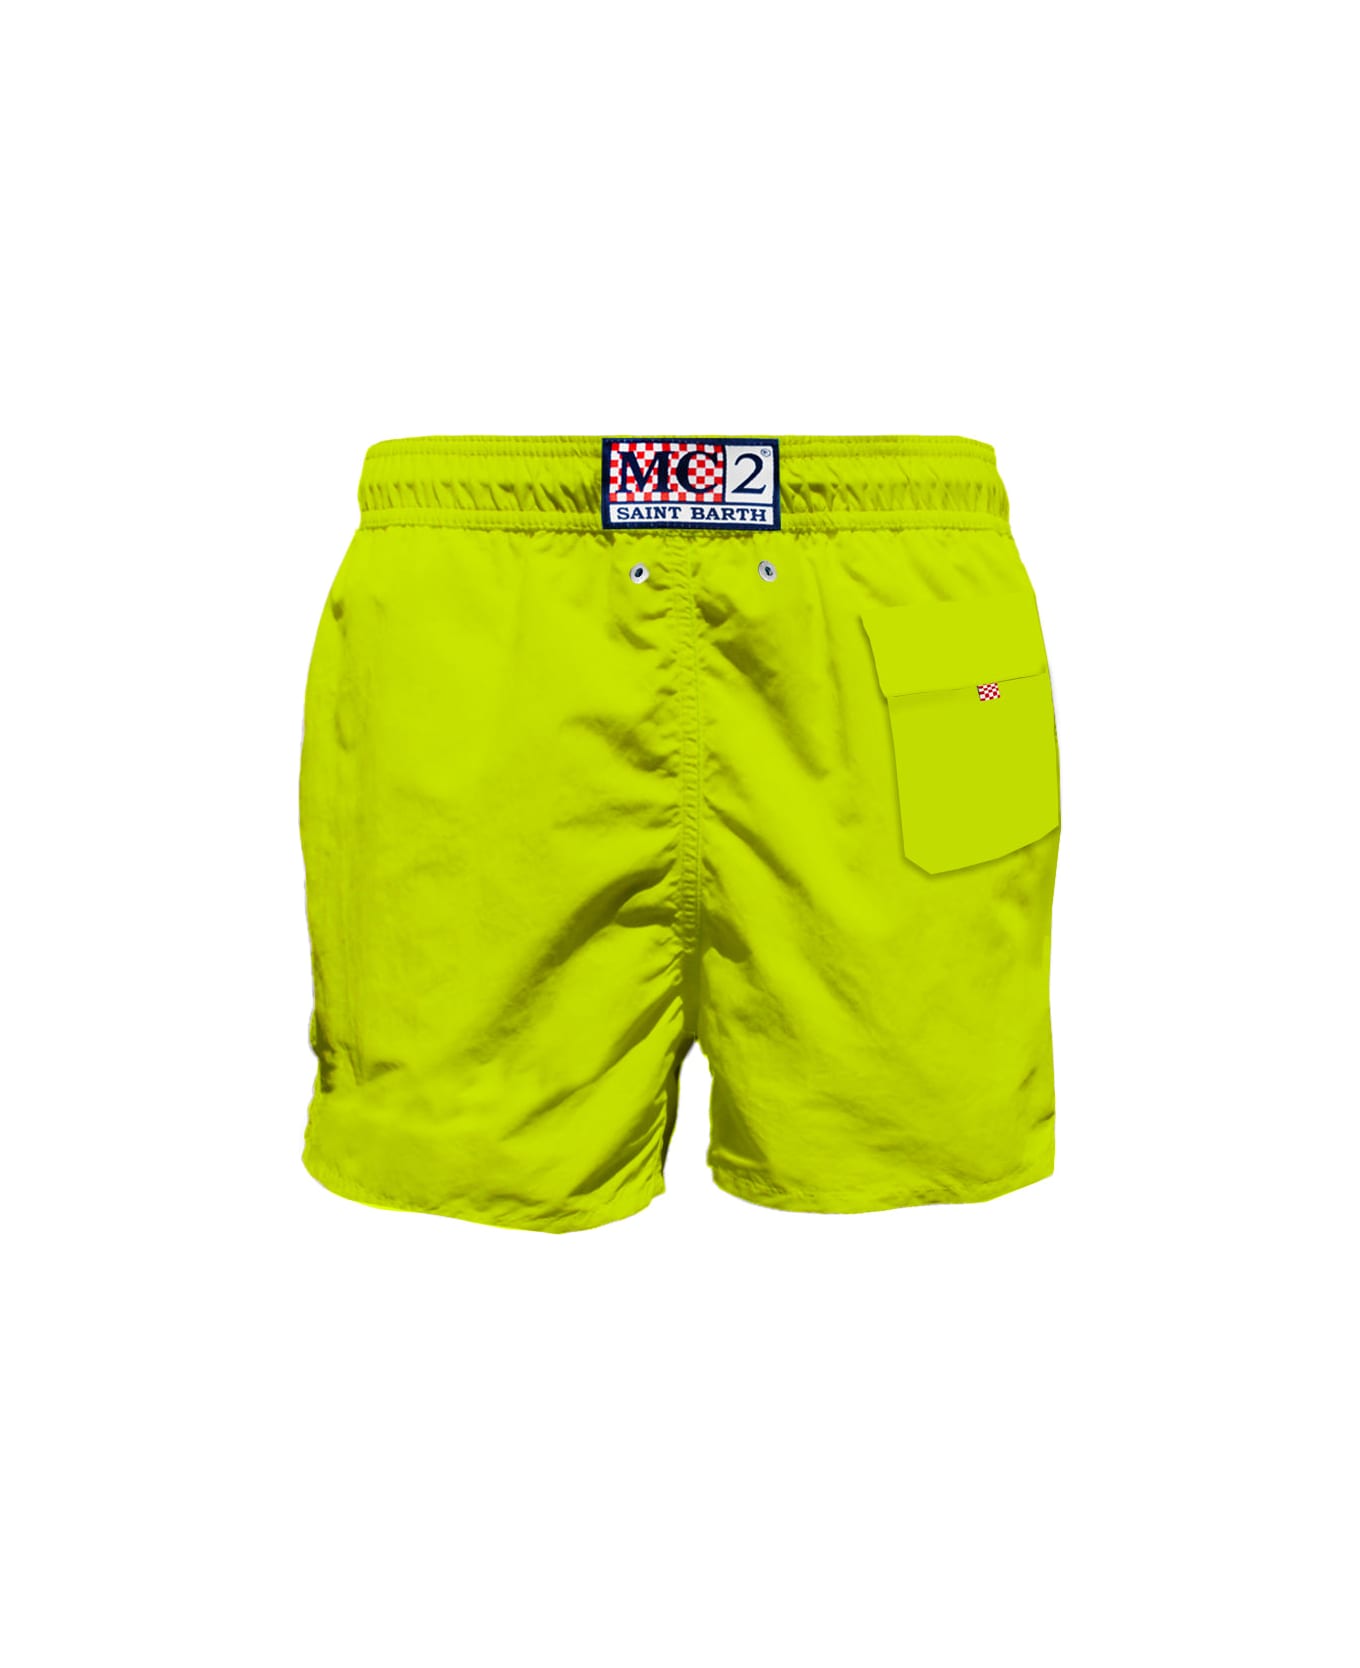 MC2 Saint Barth Man Fluo Yellow Swim Shorts With Pocket - YELLOW スイムトランクス